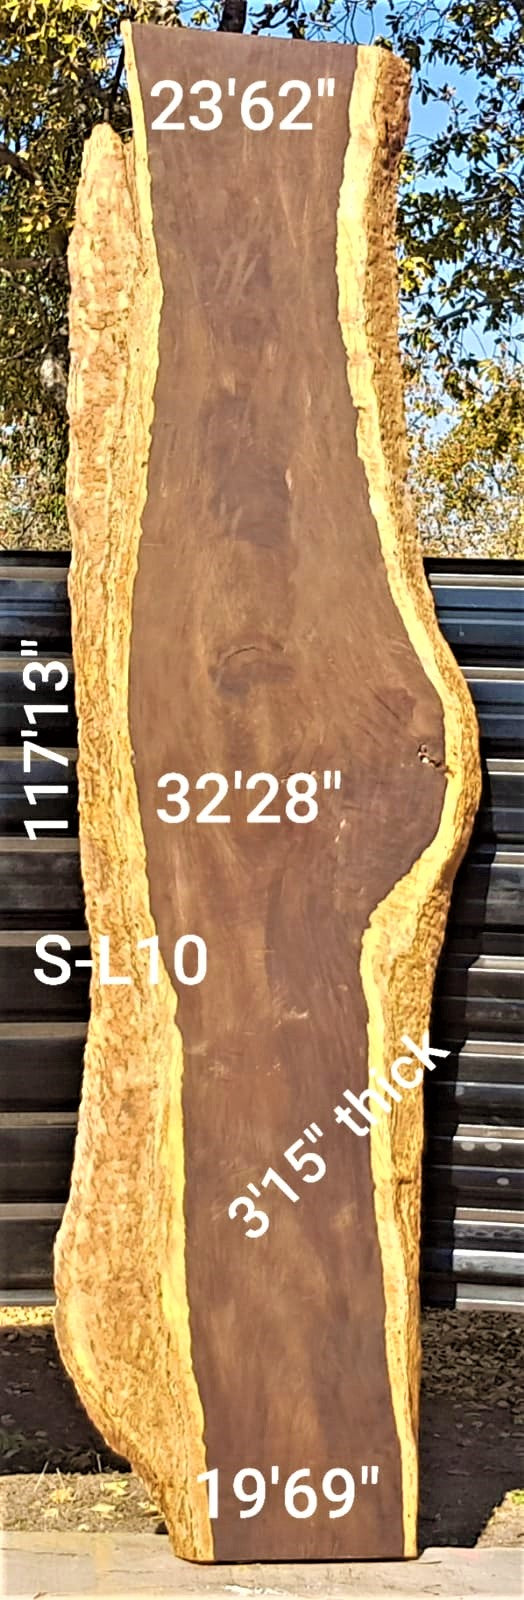 Leadwood Slab (117.13" x 32.28" x 3.15")